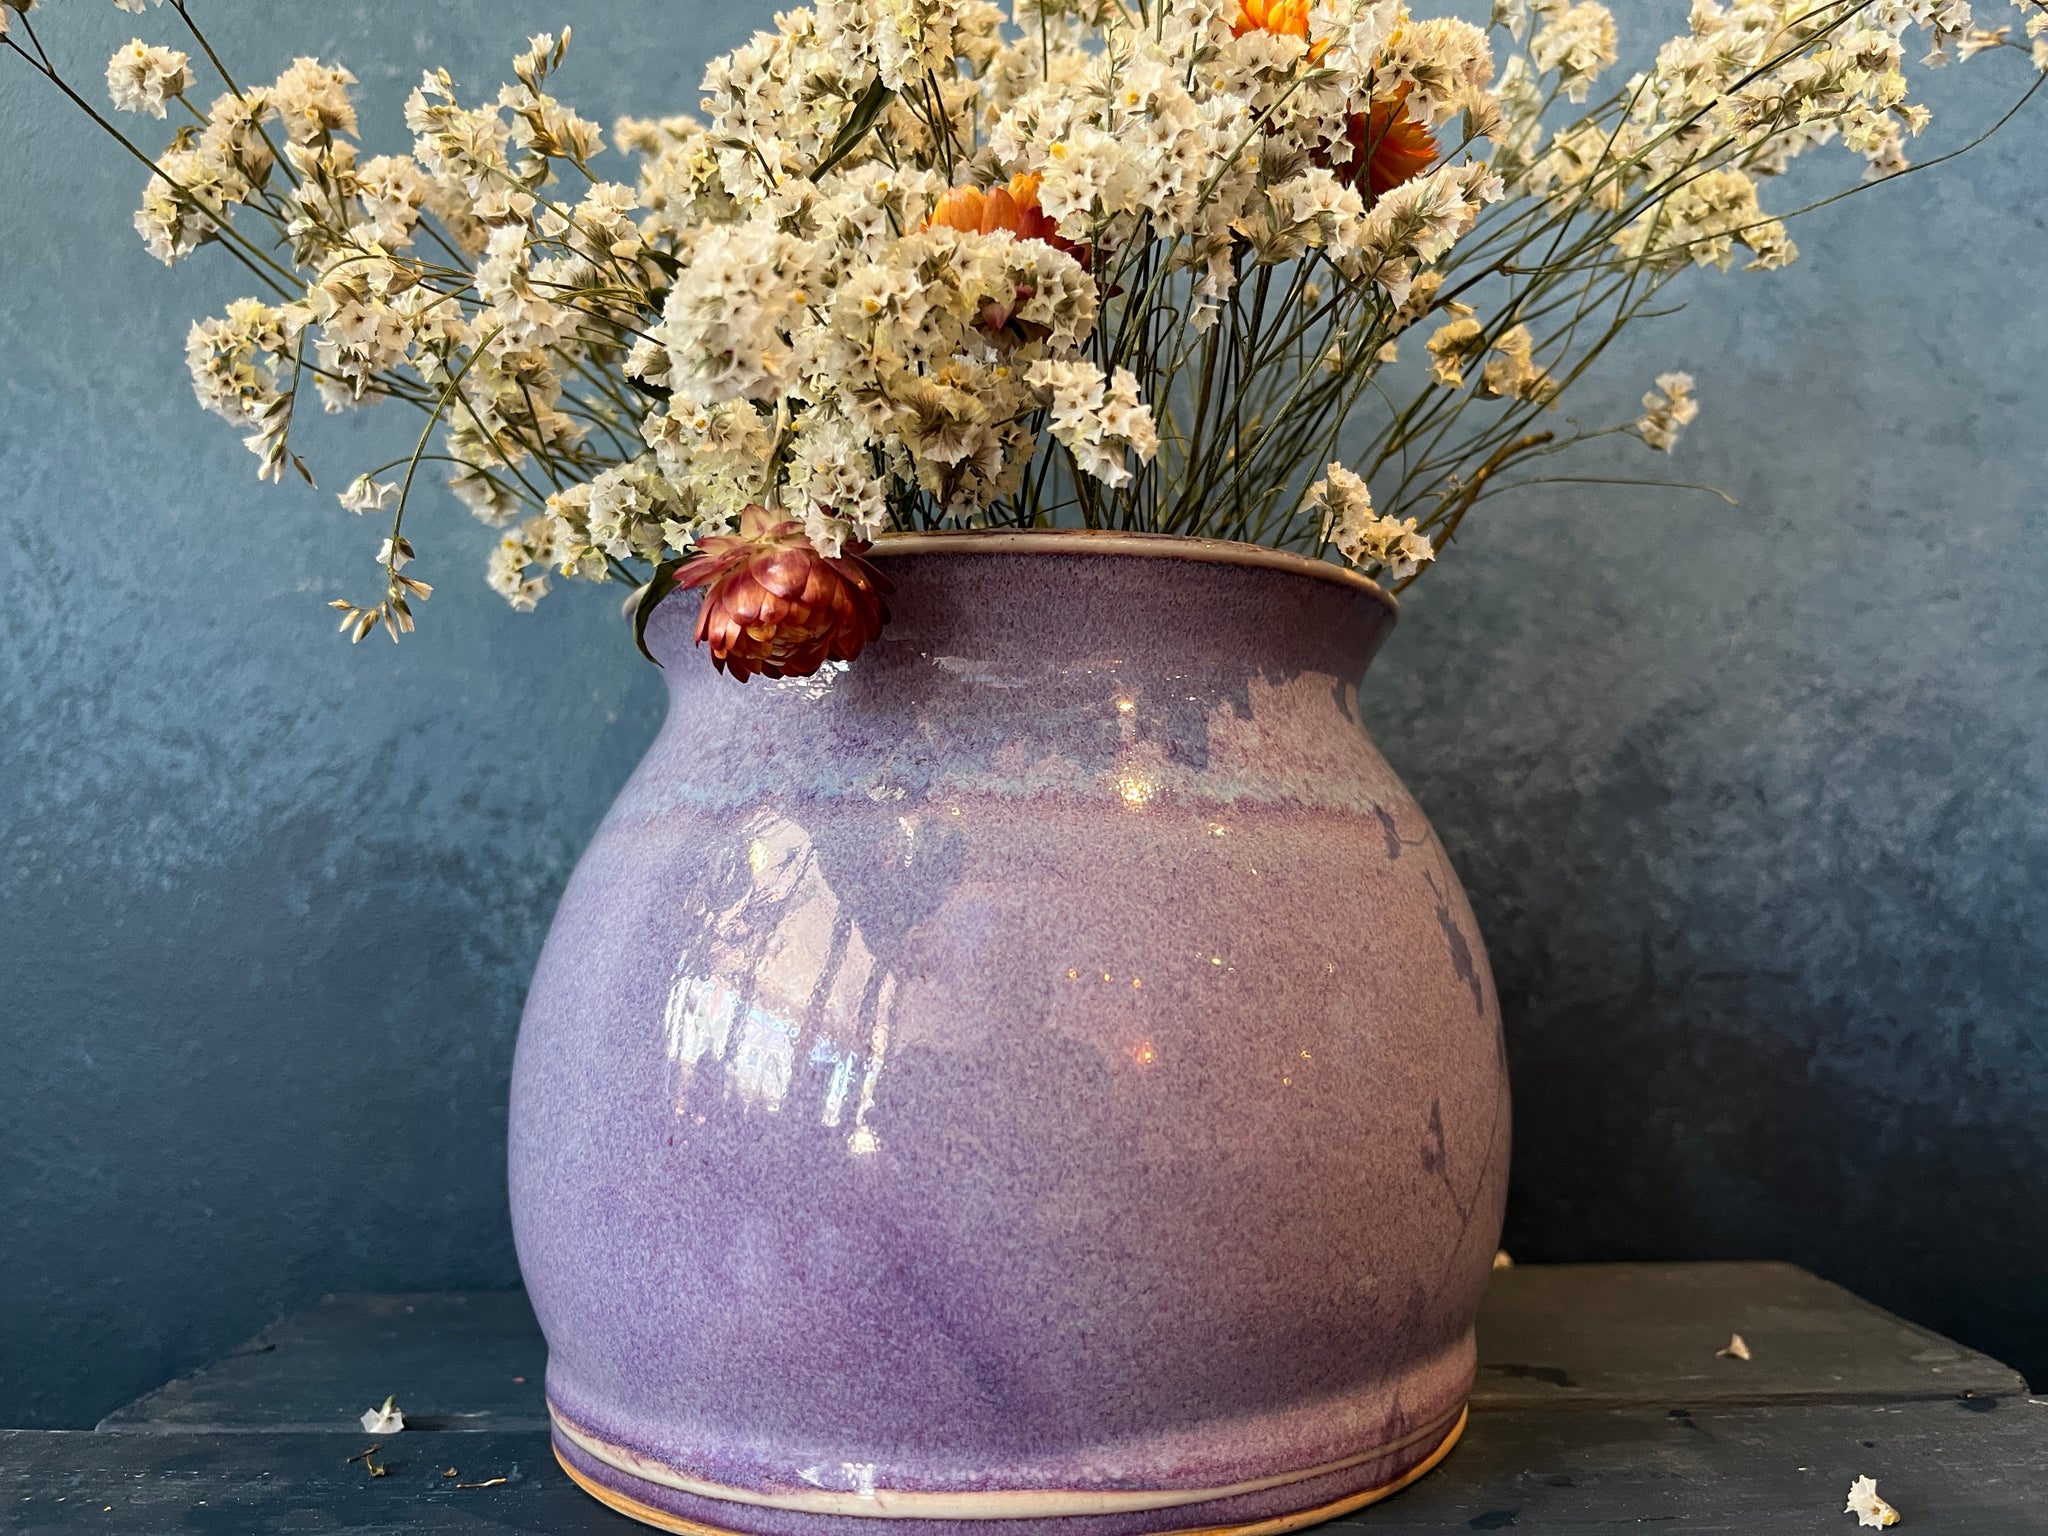 Kinyo Glazed Vase 13 cm